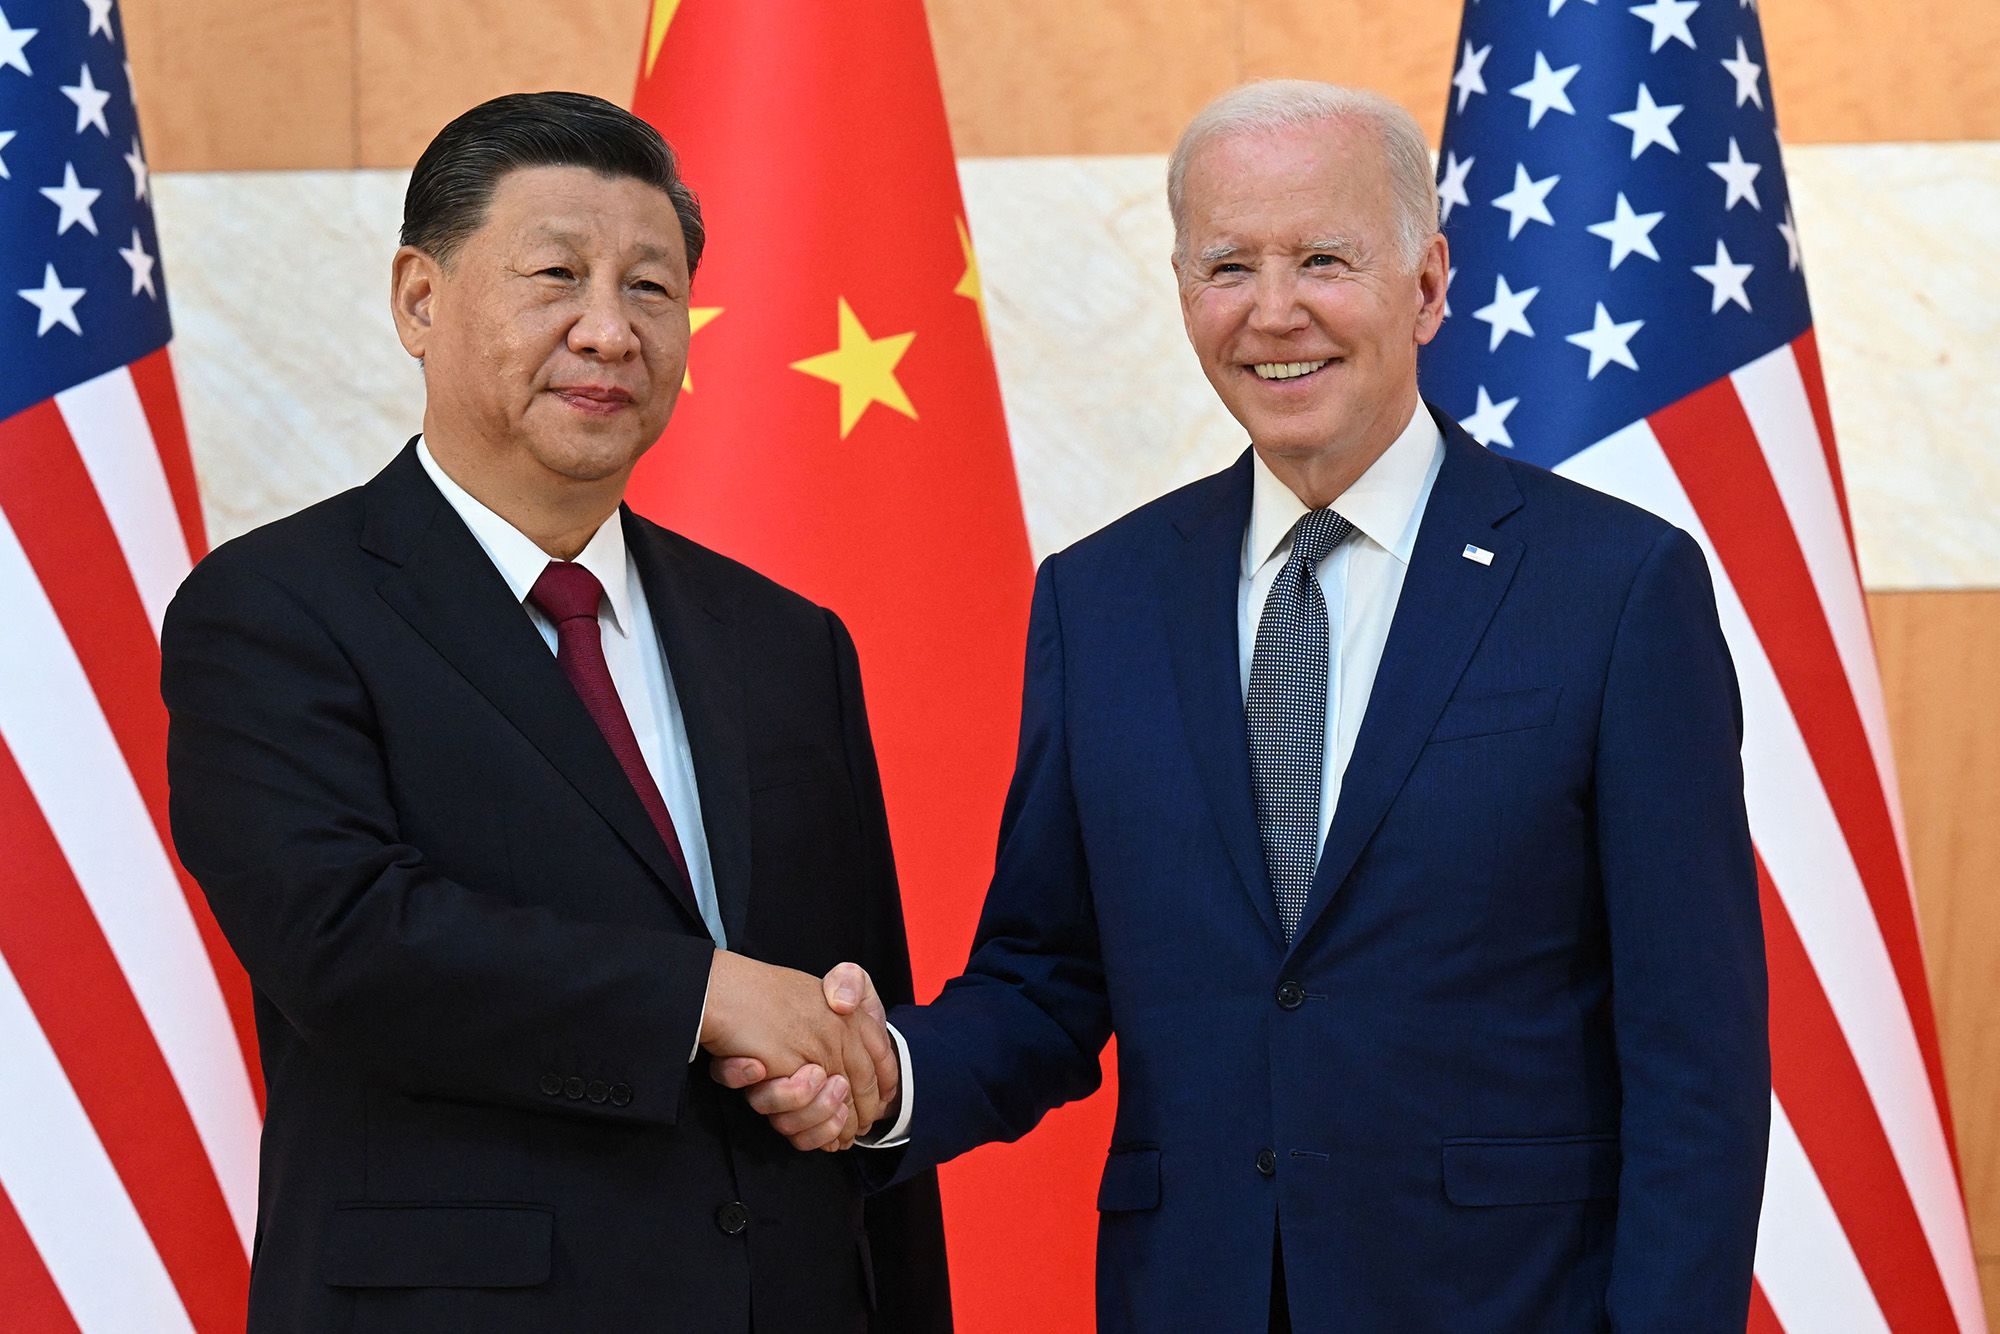 Afacerile americane în China. Ce impact major a avut întâlnirea dintre Biden și Xi